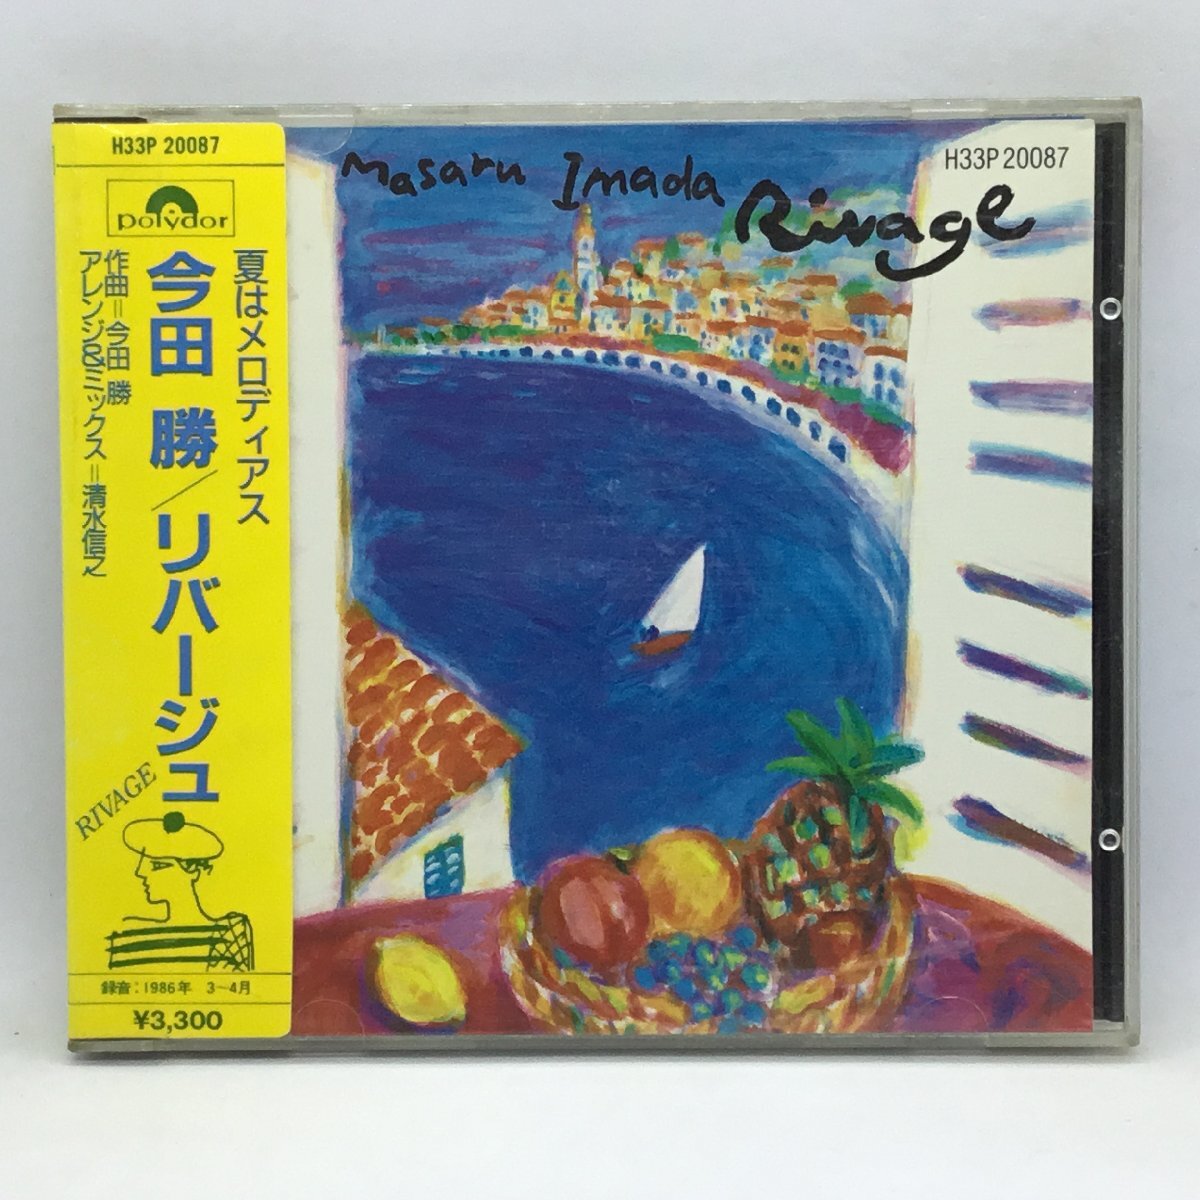 旧規格 SANYOプレス ◇ 今田勝 / リバージュ (CD) H33P20087 MASARU IMADA / RIVAGEの画像1